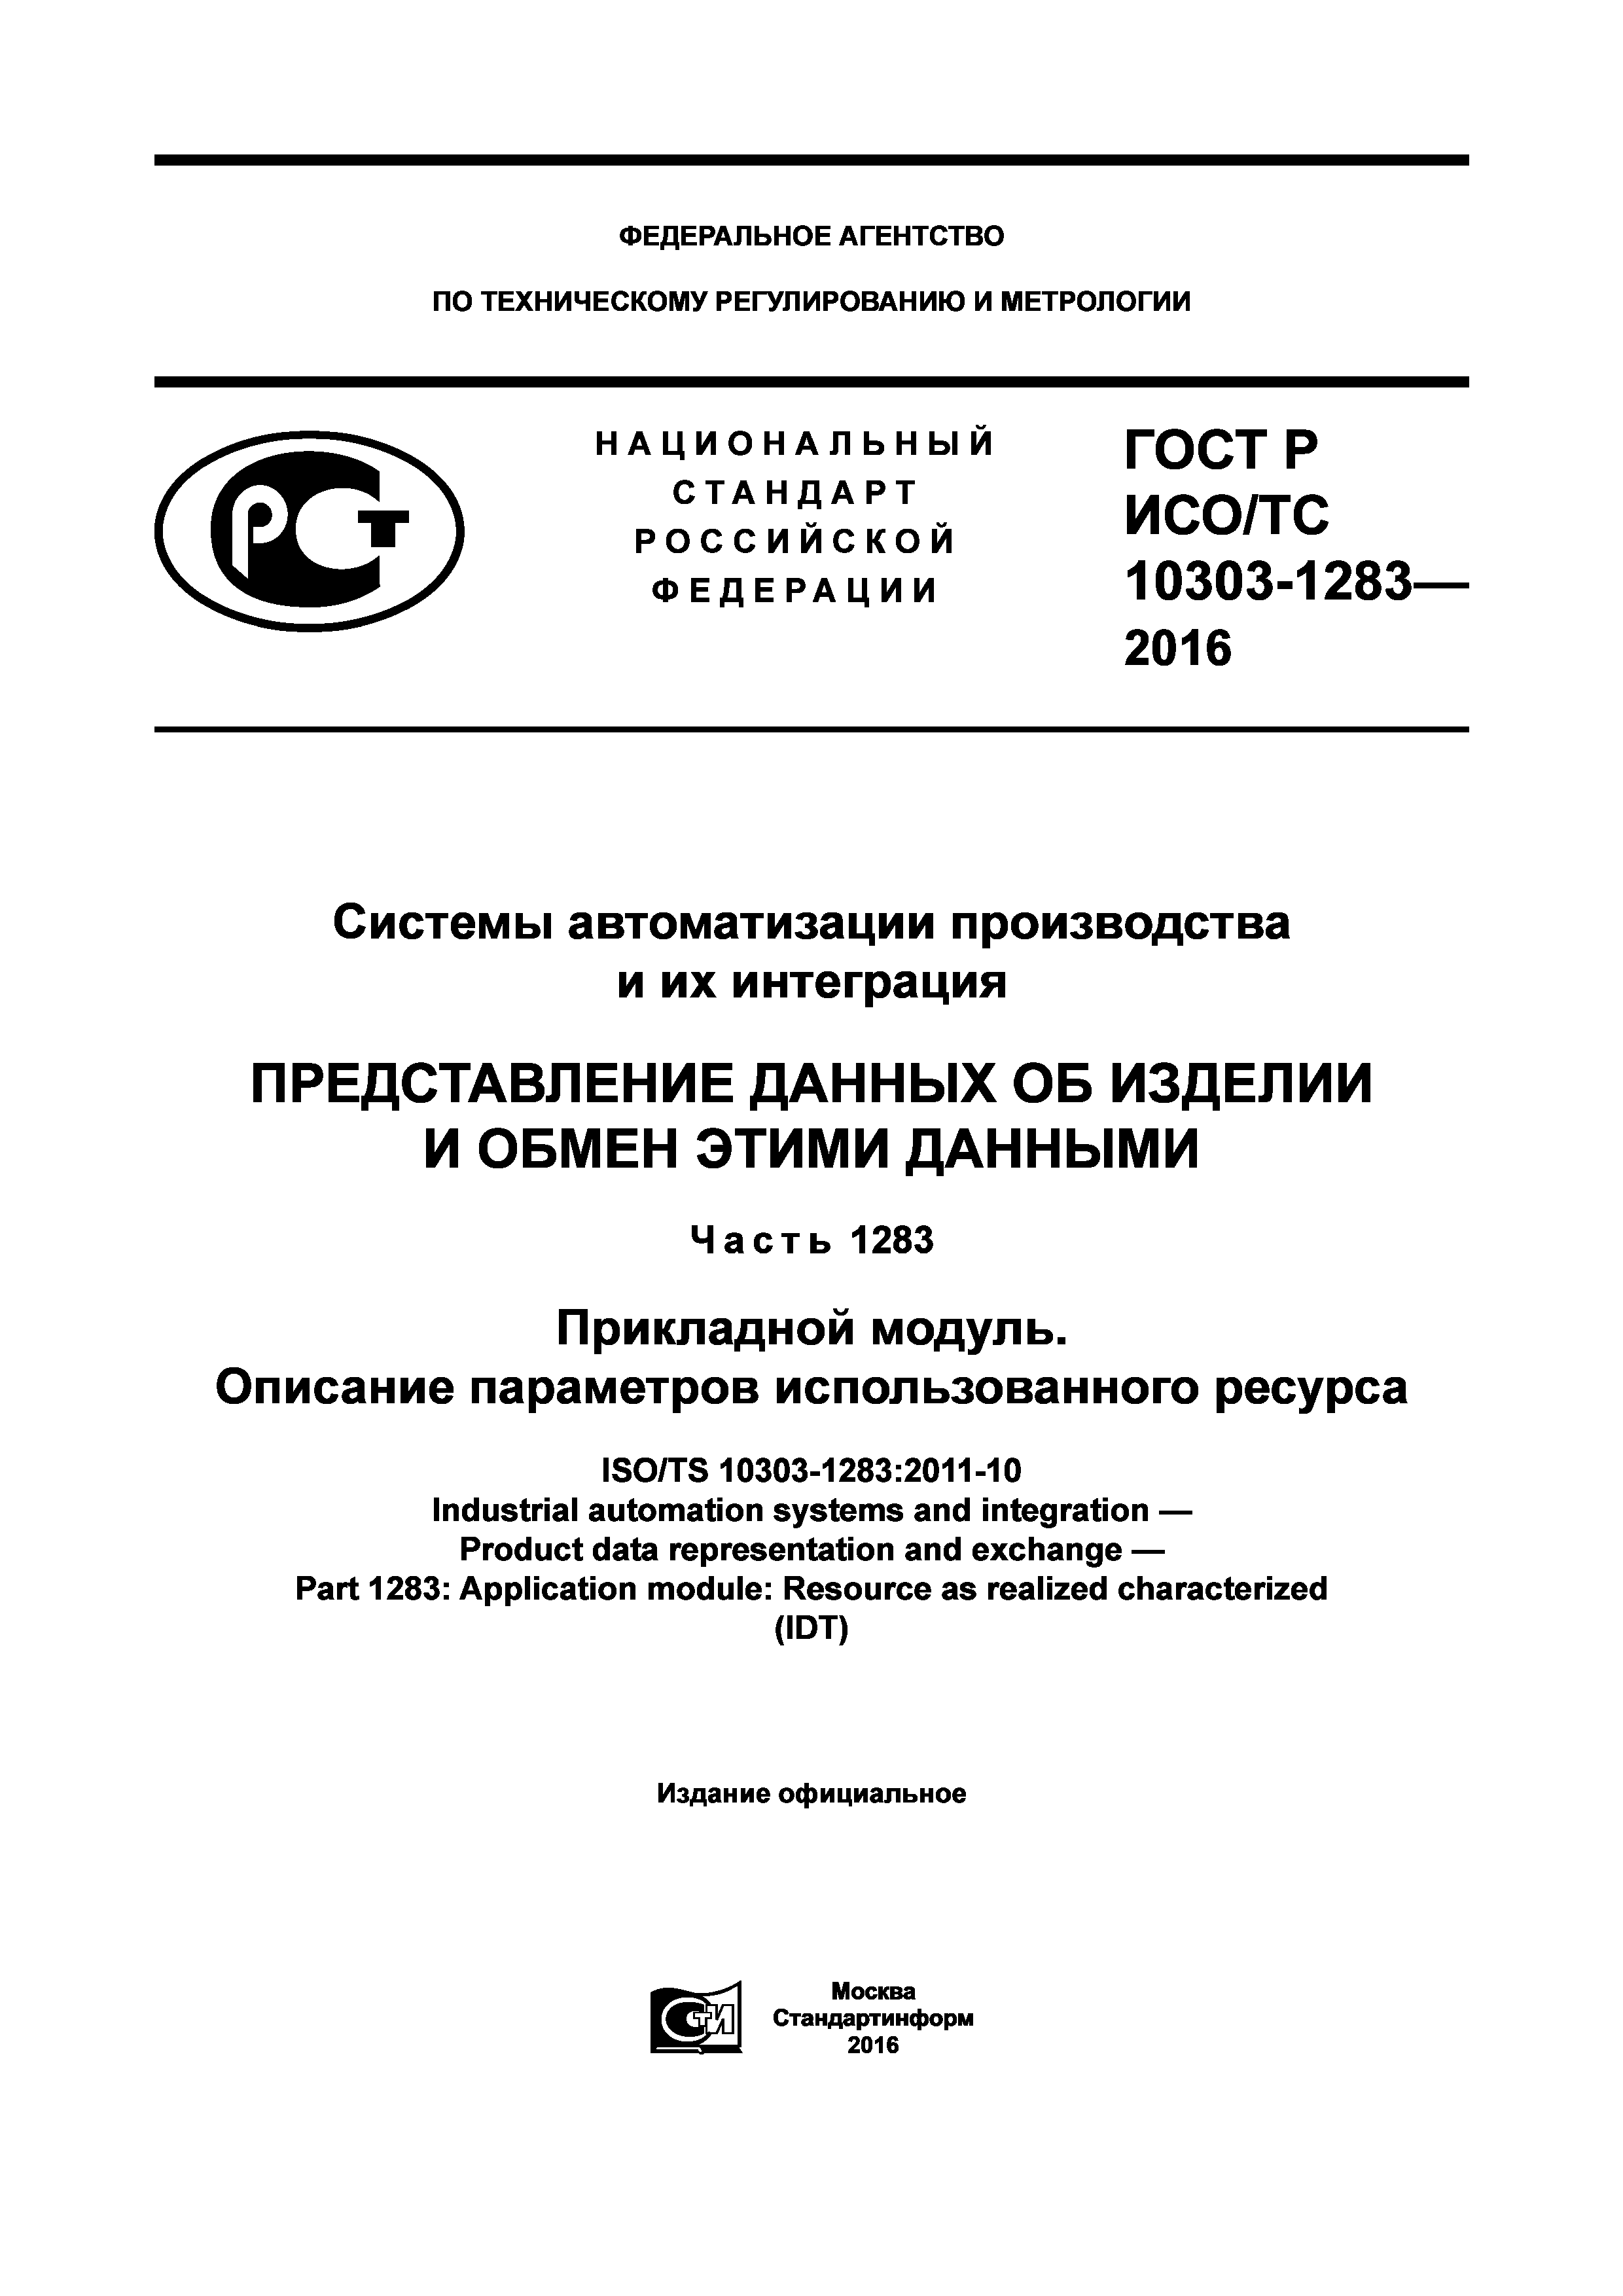 ГОСТ Р ИСО/ТС 10303-1283-2016